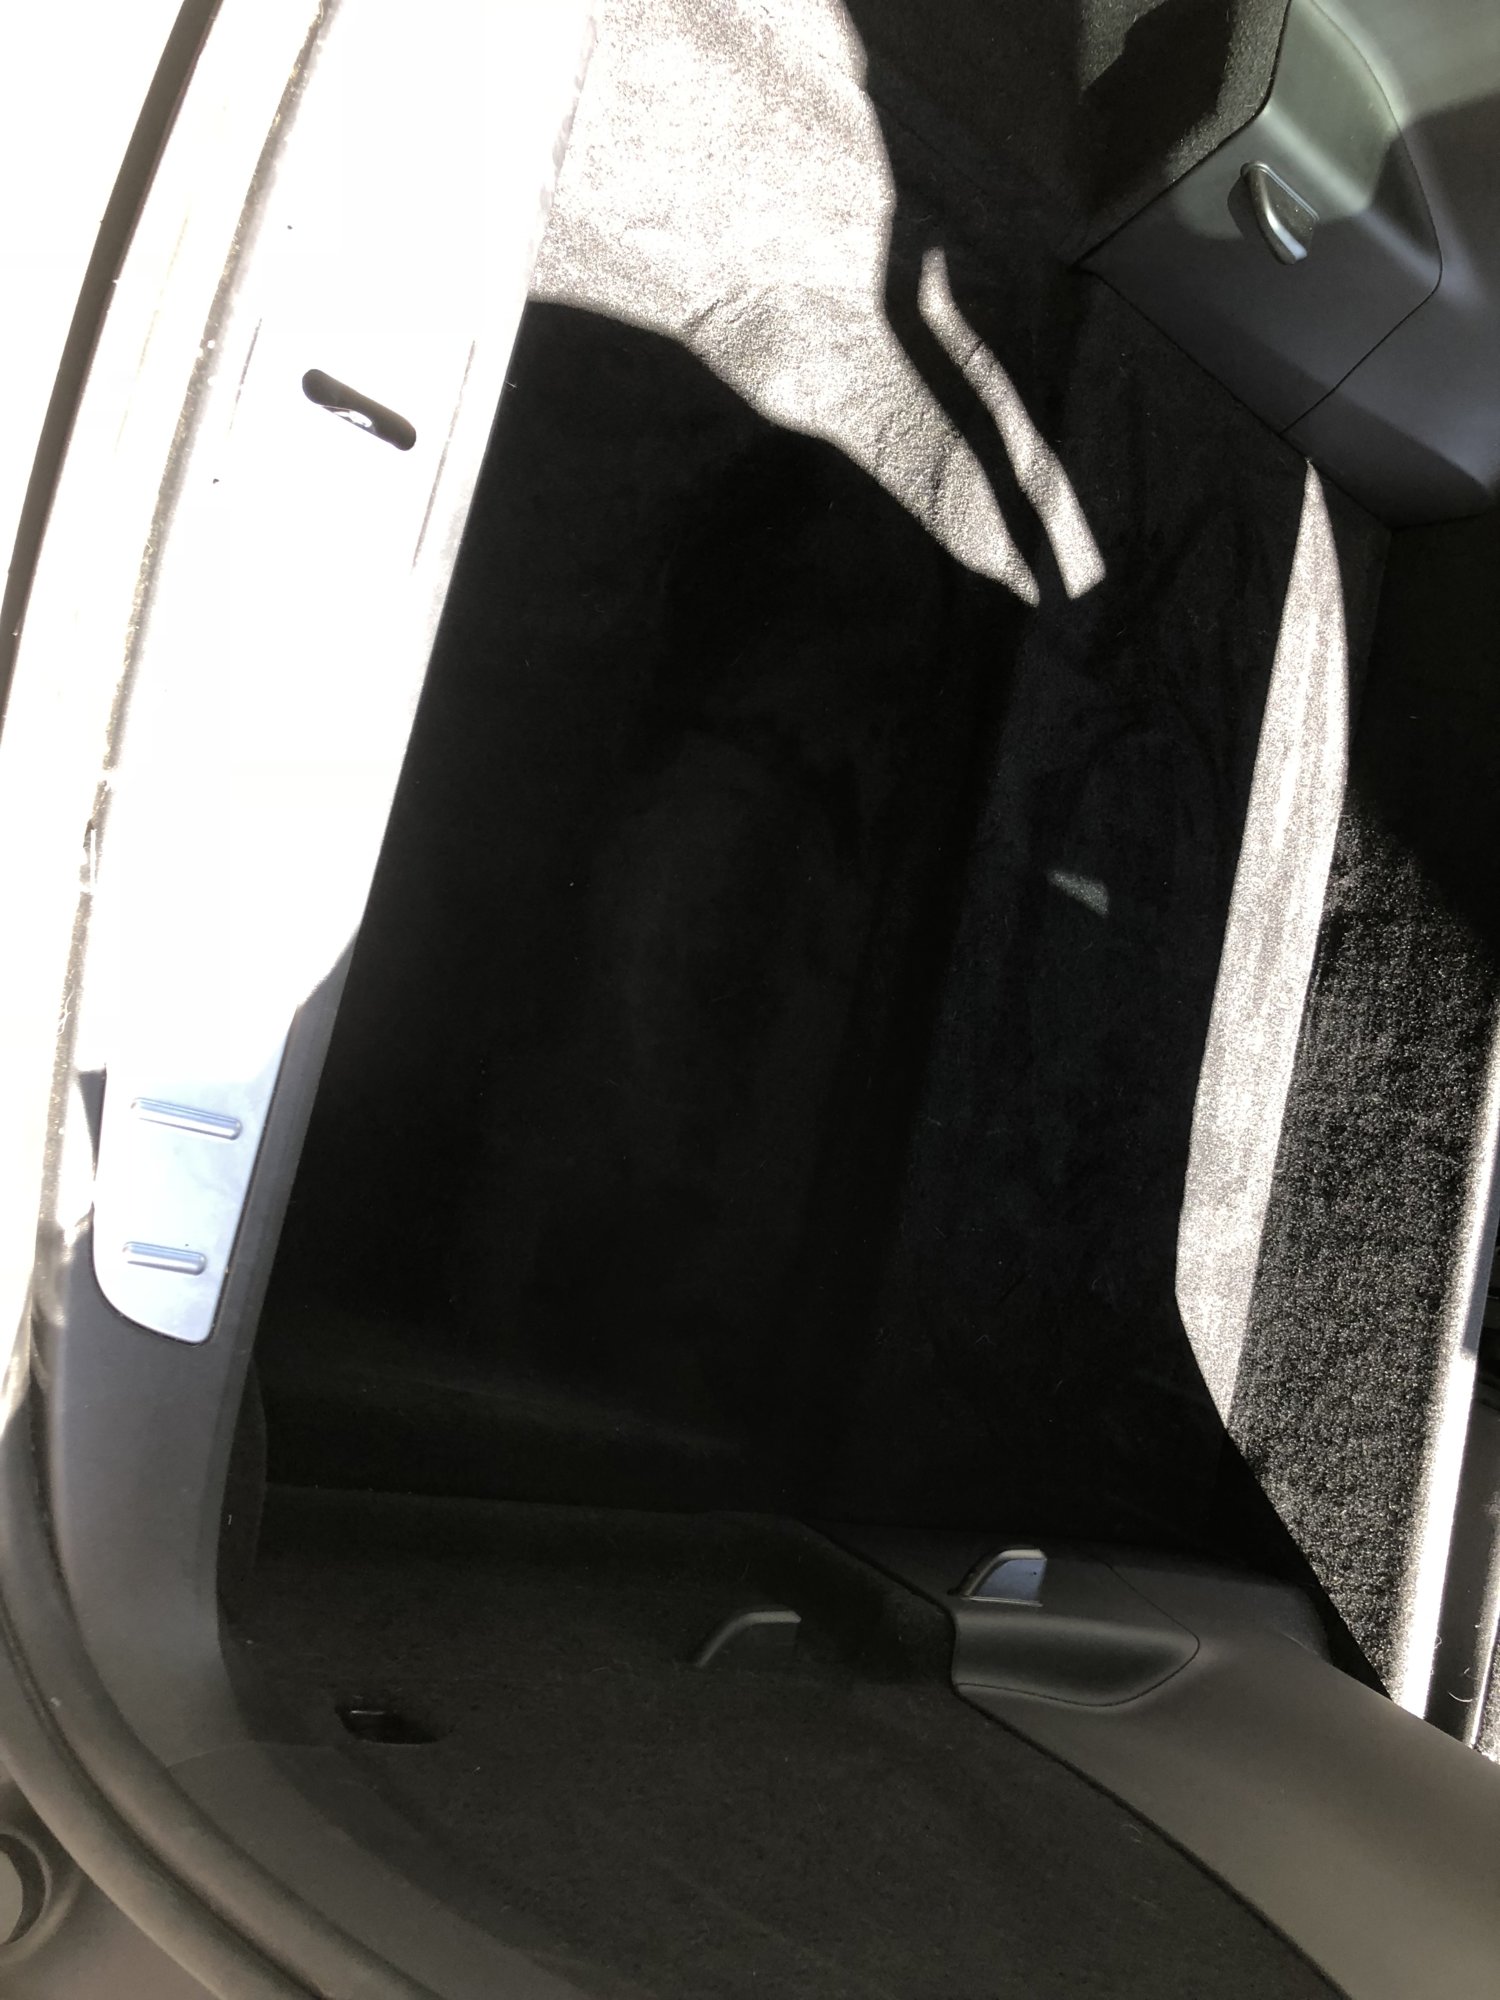 Kofferraum Model X 5 Sitzer - Model X Allgemeines - TFF Forum - Tesla  Fahrer & Freunde